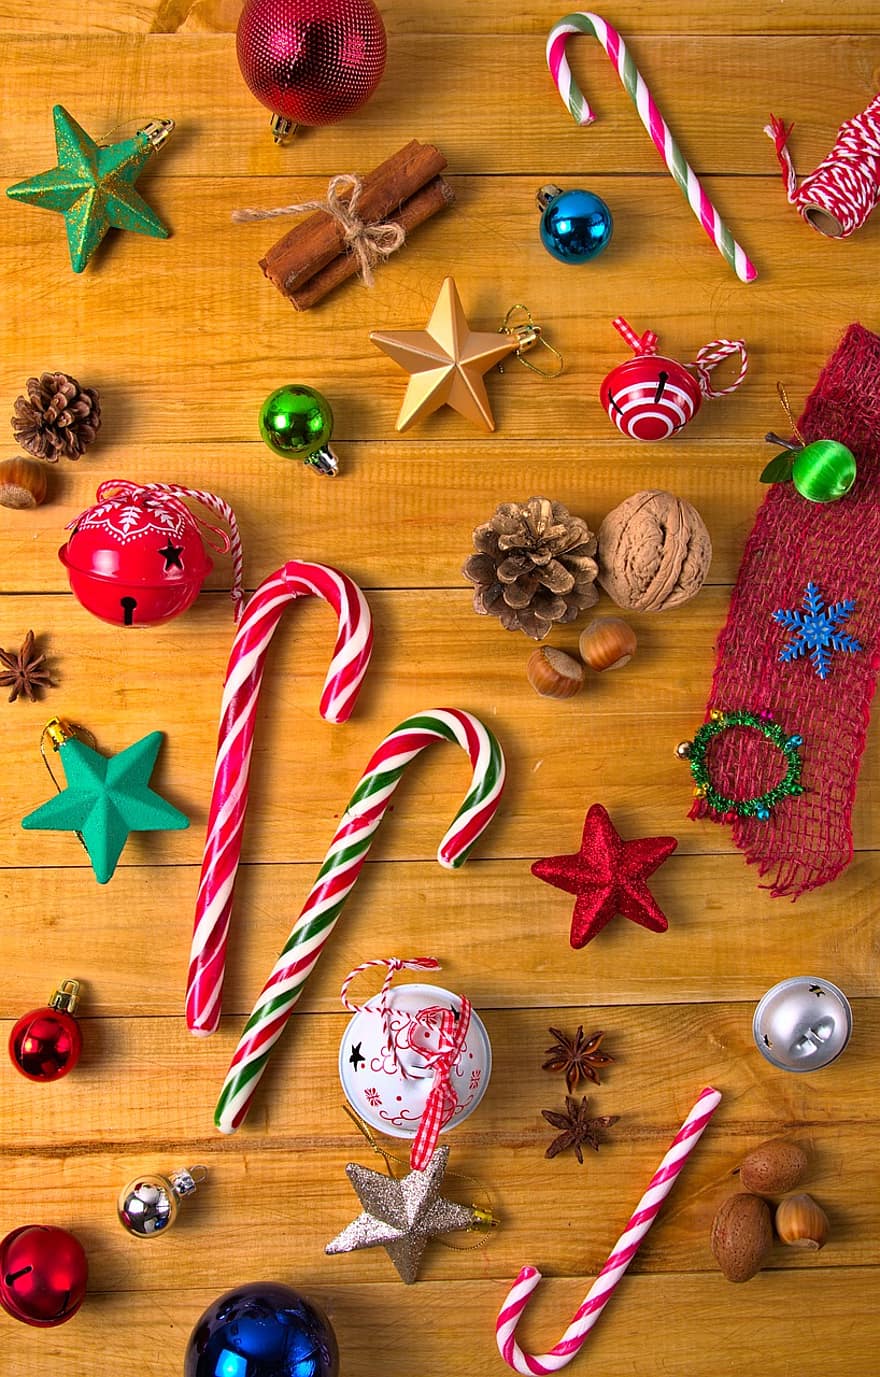 laski cukierków, bombki, gwiazdy, gwiazdy świąteczne, szyszki sosnowe, dekoracje, ozdoby świąteczne, ozdoby, świateczne ozdoby, Boże Narodzenie tło, Boże Narodzenie tapeta